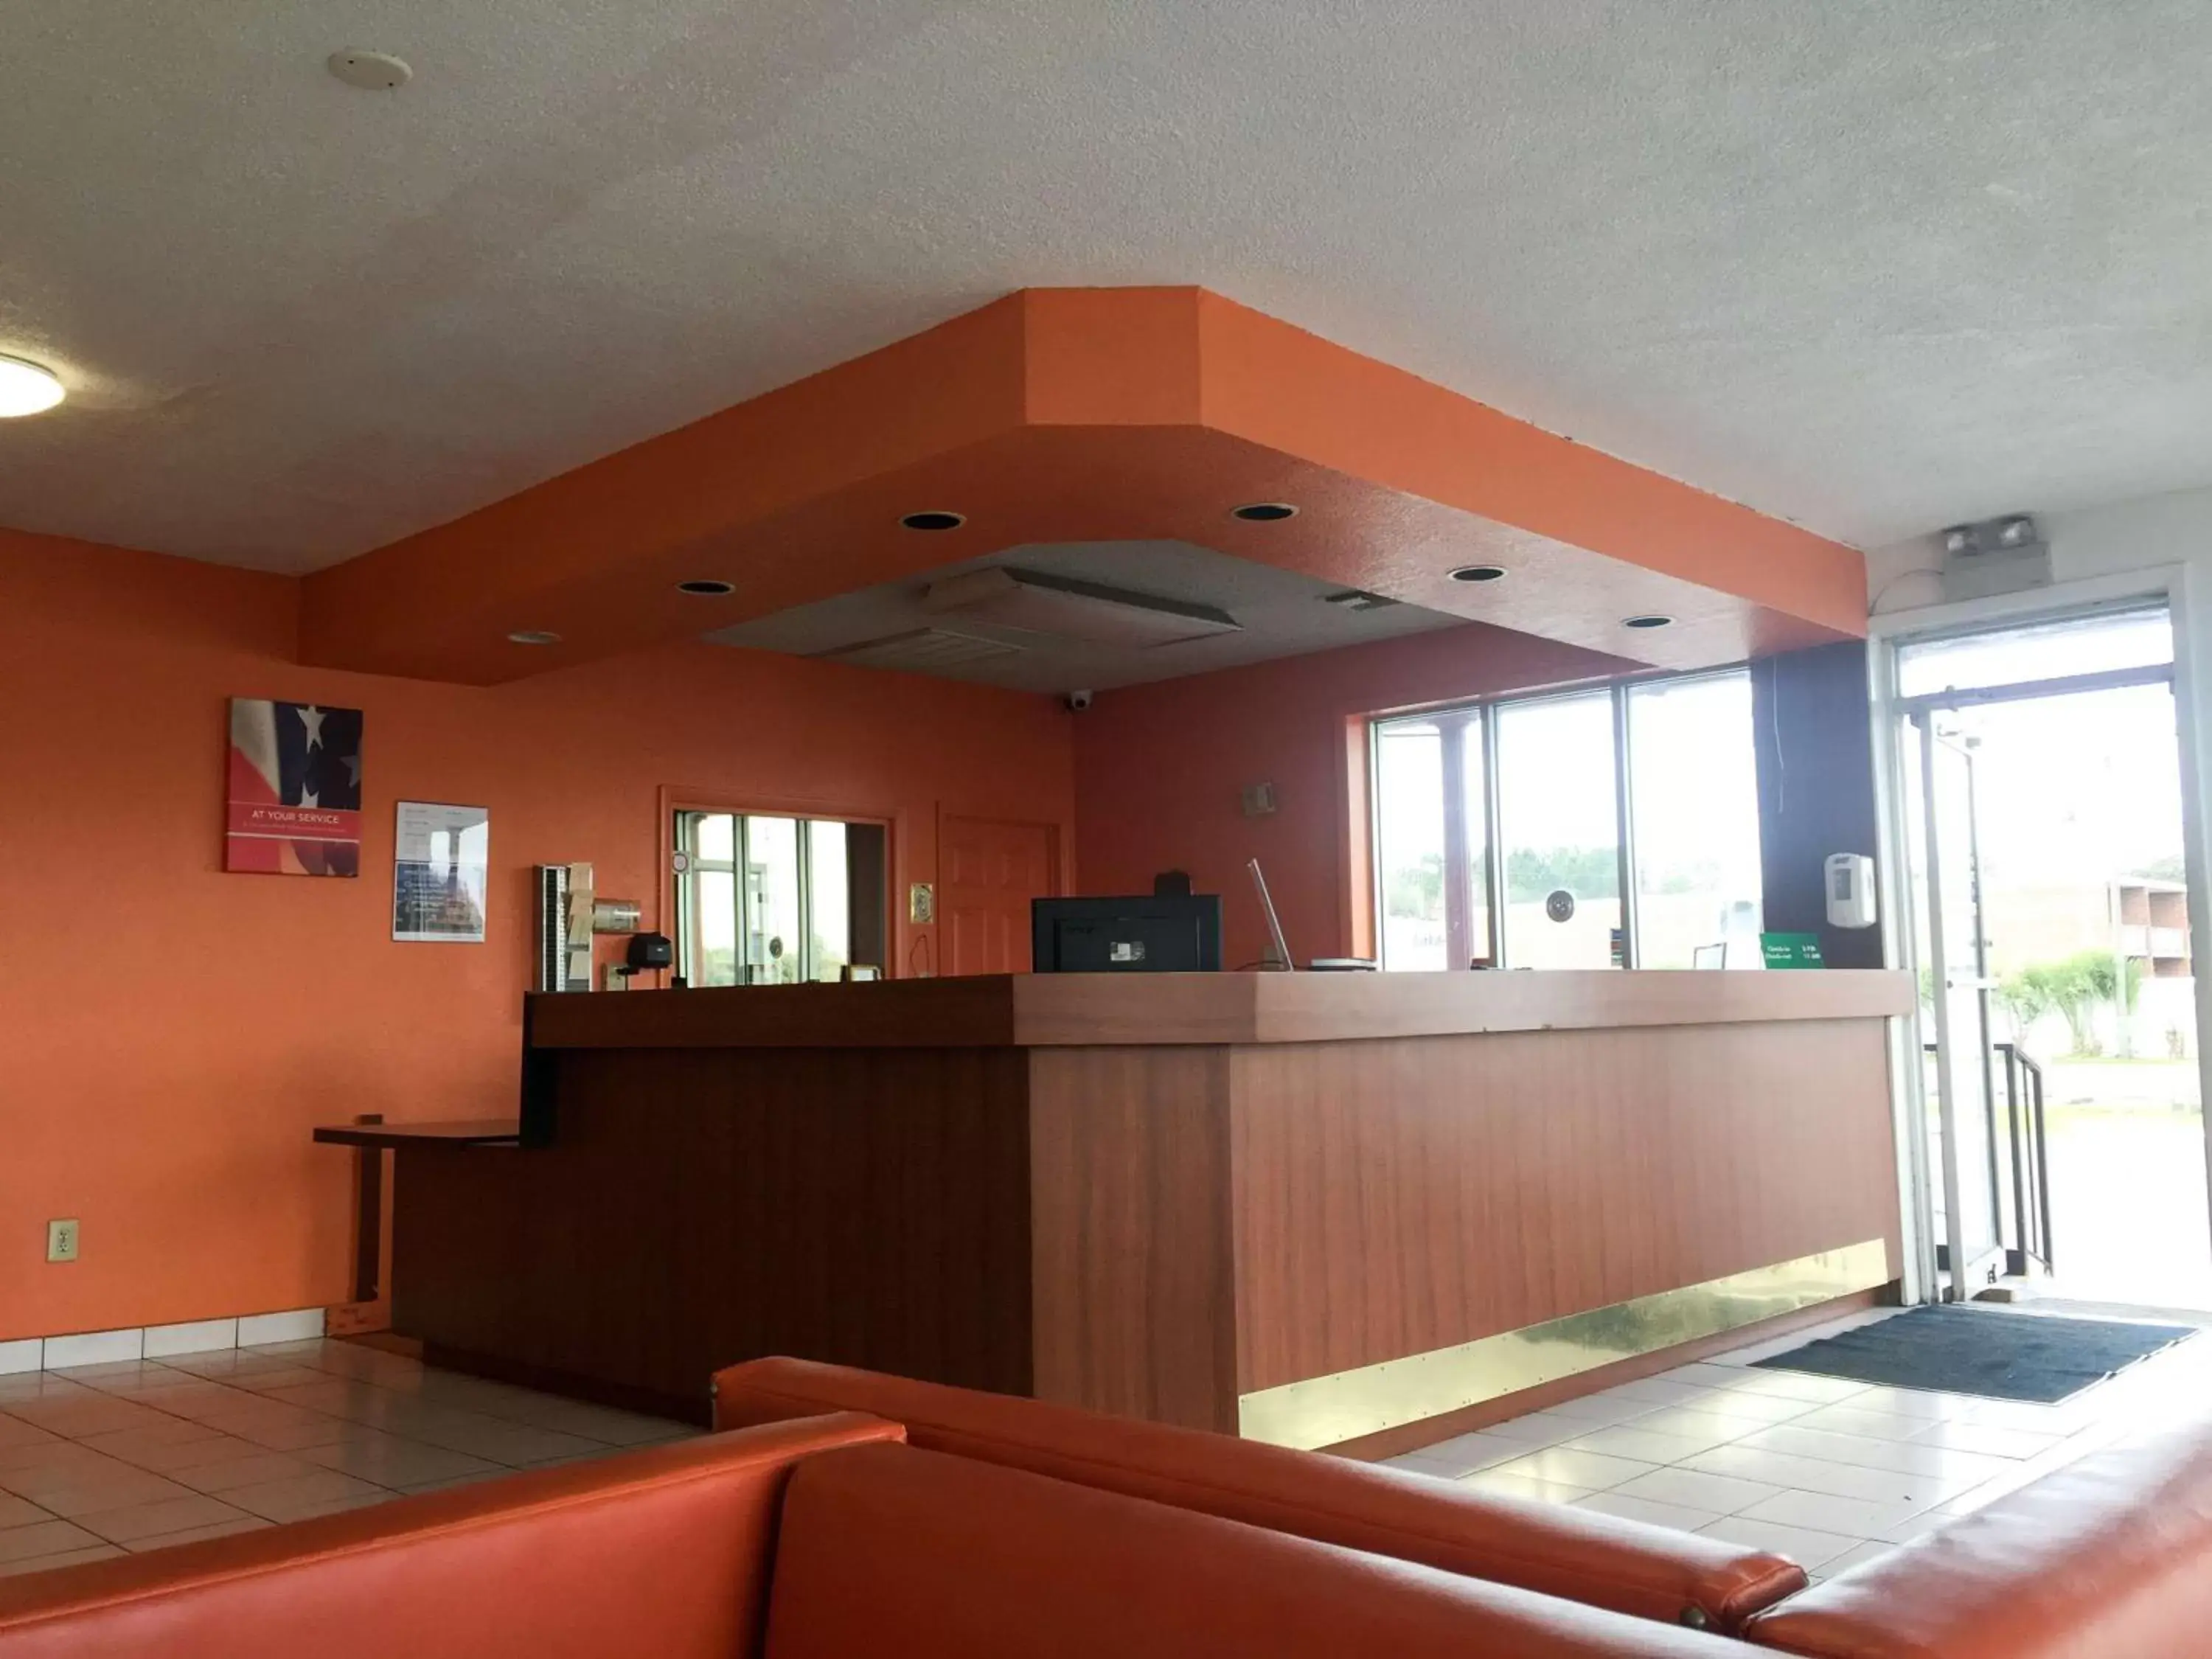 Lobby or reception, Lobby/Reception in Motel 6-Wildwood, FL